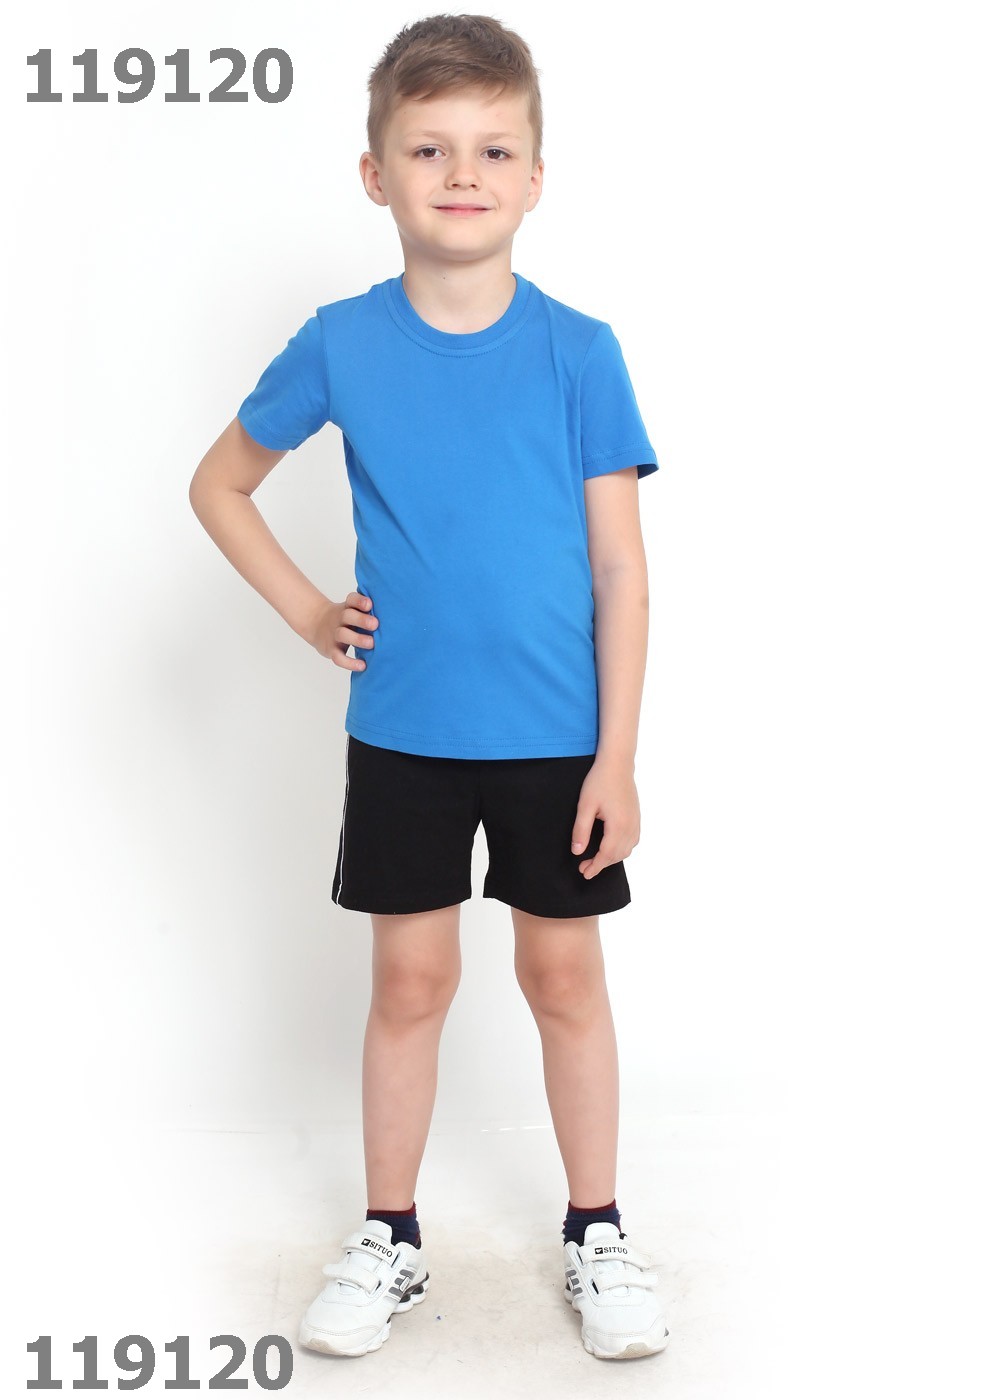 Шорты 7 лет. Clever шорты детские 636161. Спортивные шорты для мальчика. Мальчик в полный рост. Мальчик в майке и шортах.